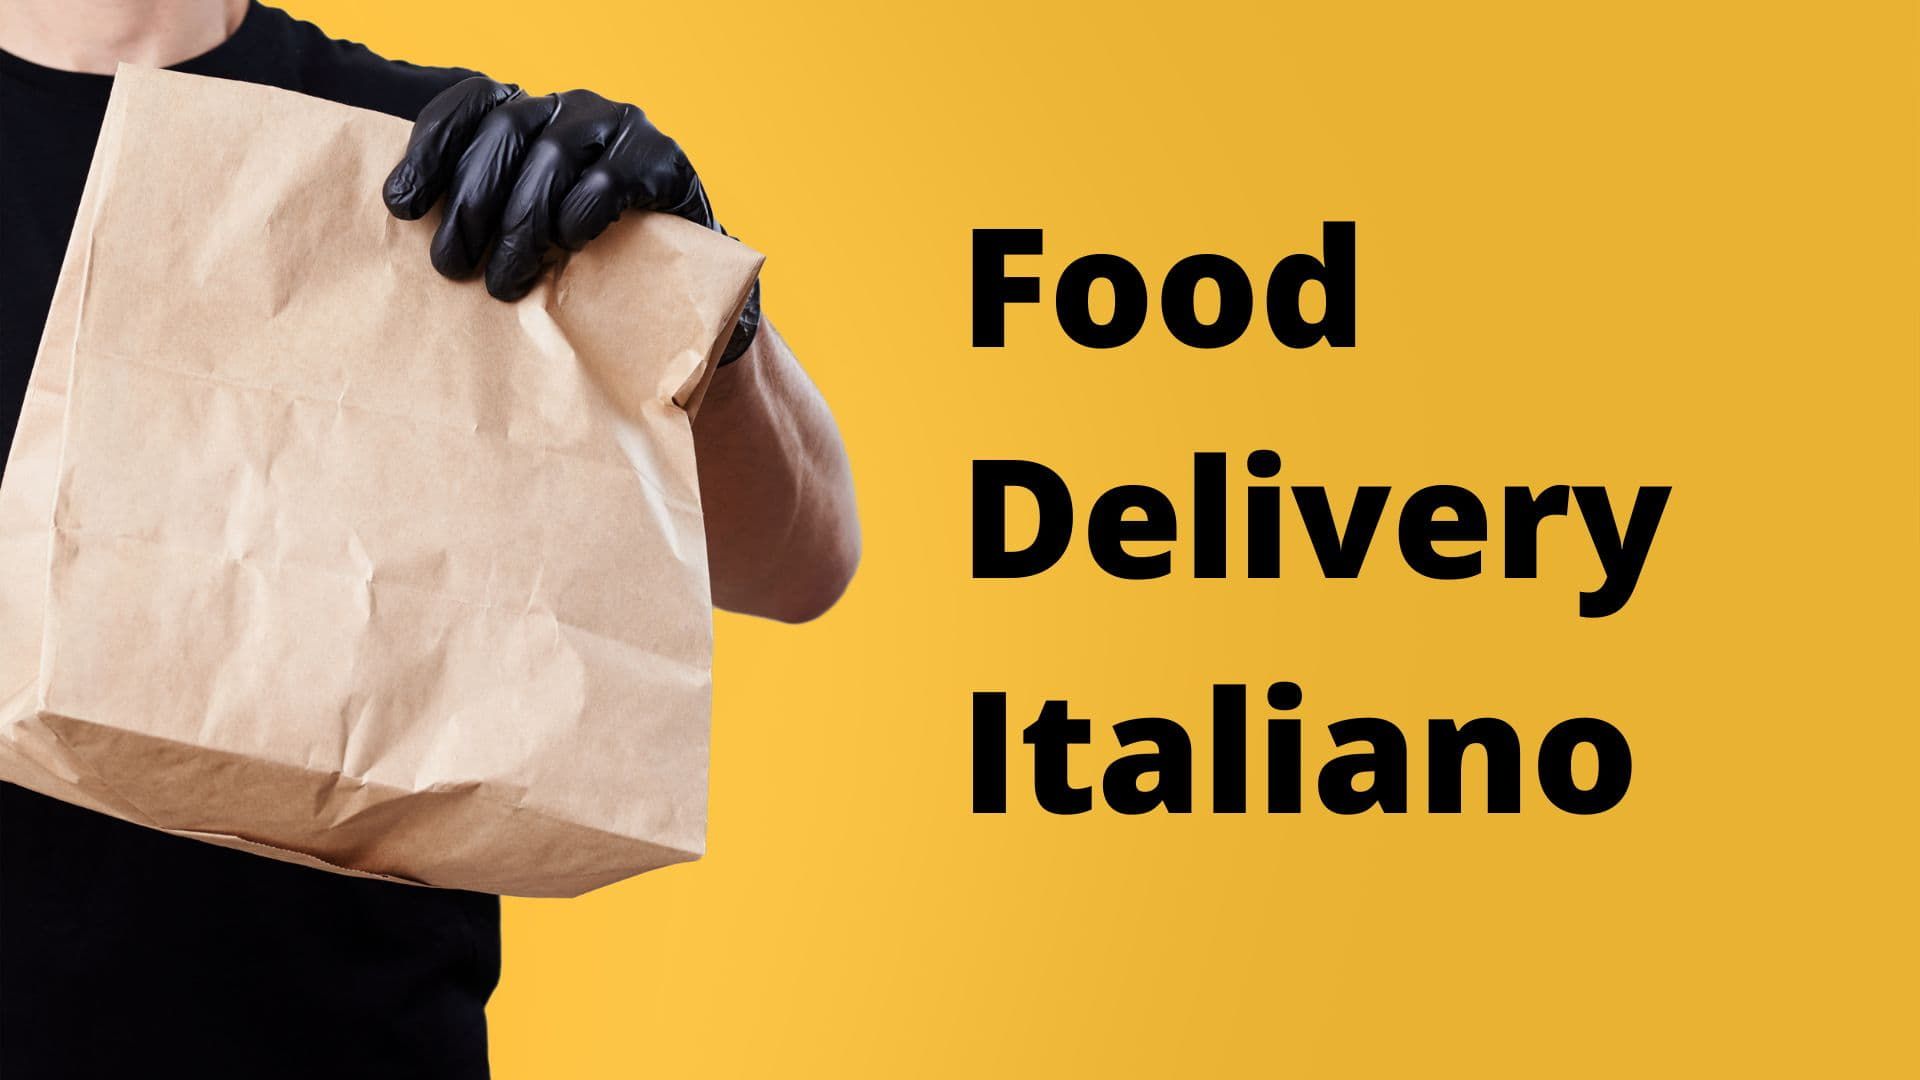 Food delivery italiano: a casa come al ristorante